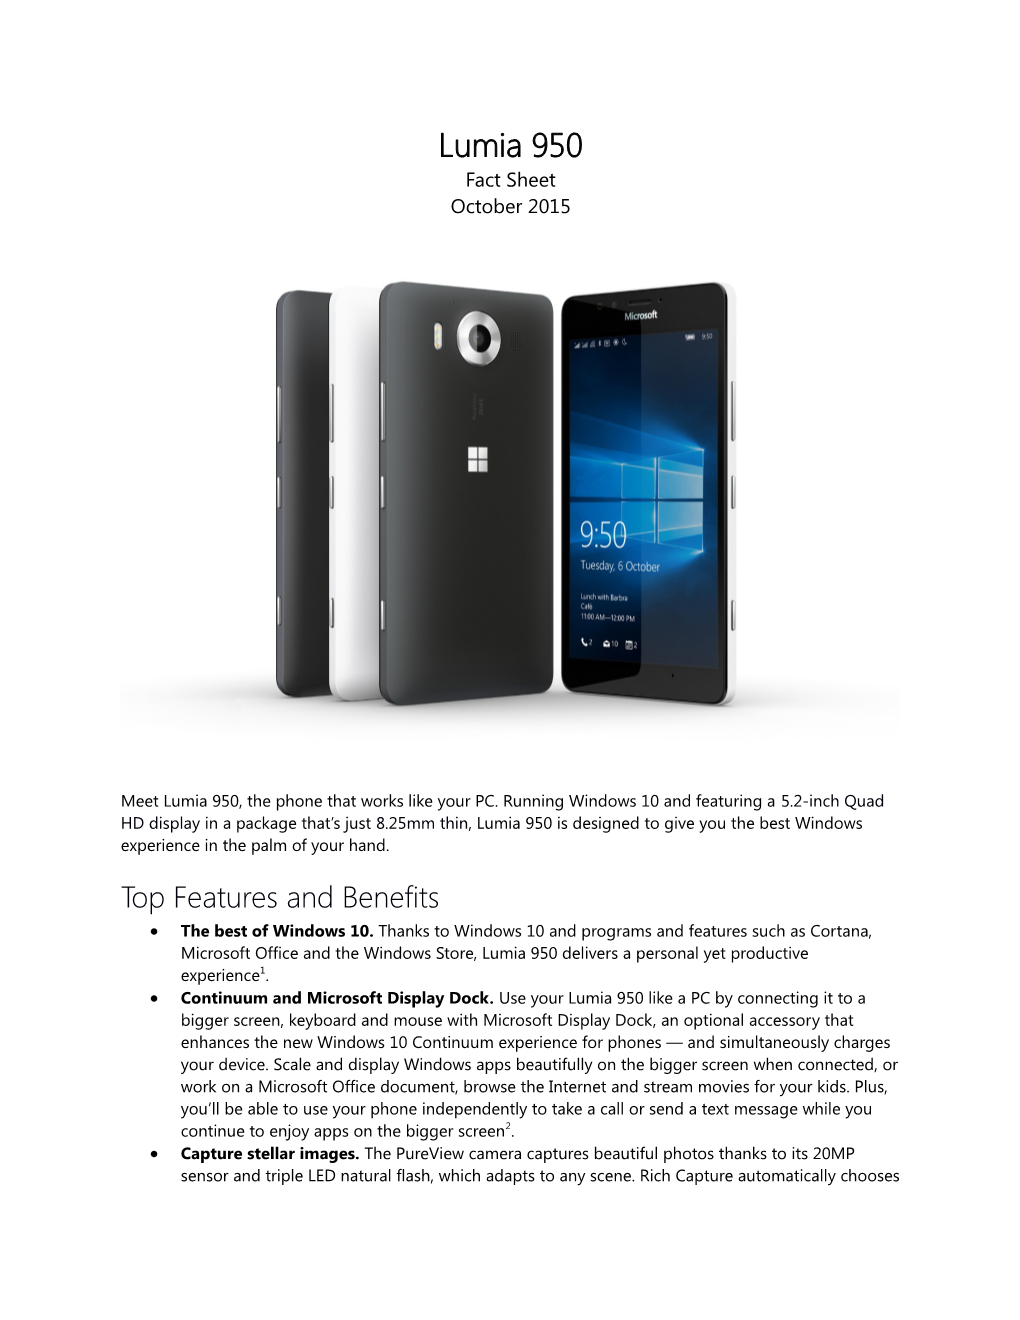 Lumia 950 Fact Sheet October 2015